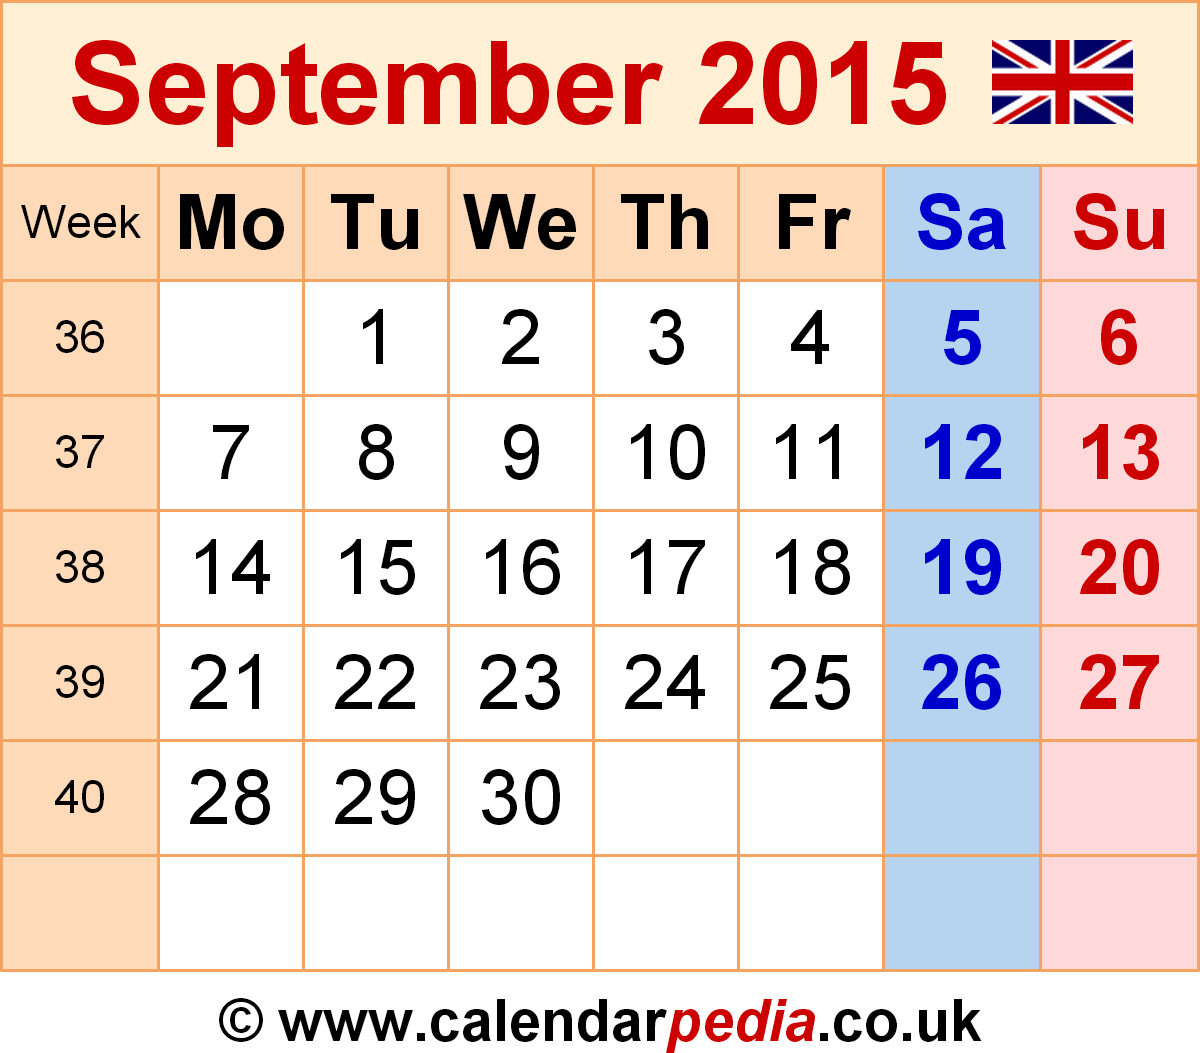 Blank September 2015 calendar